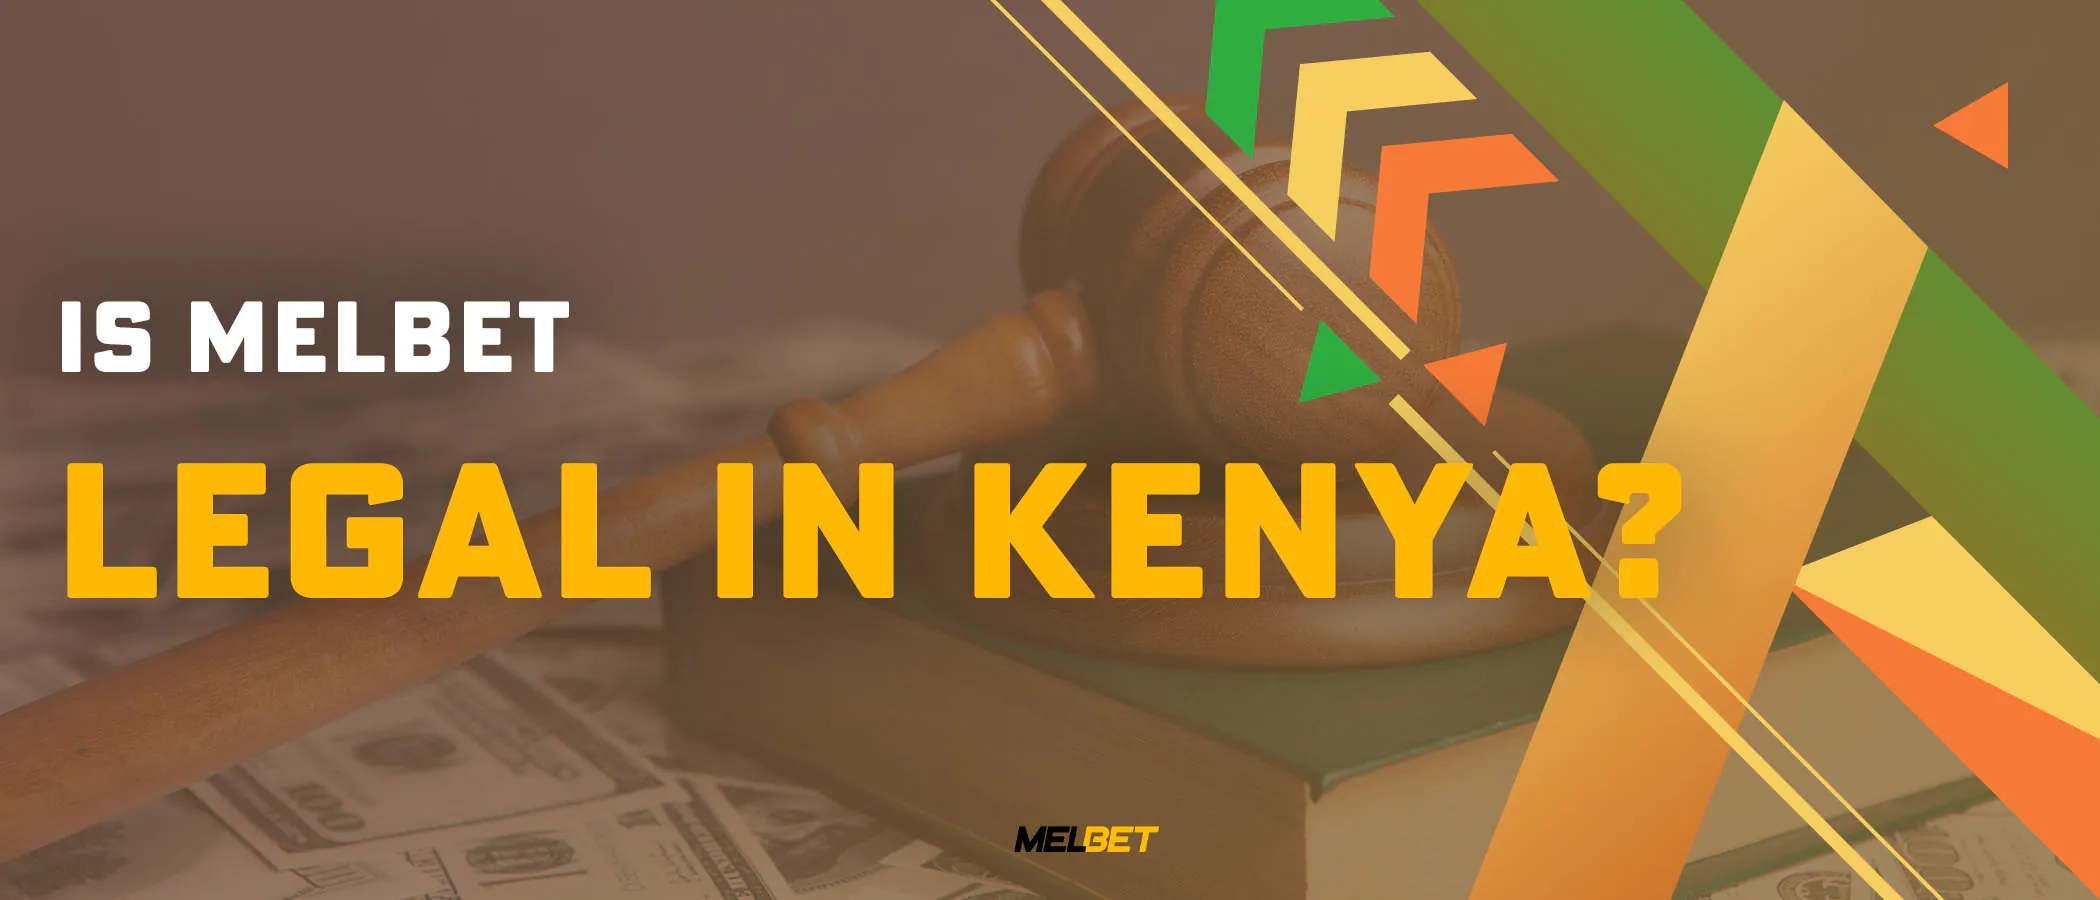 Is Melbet legal in Kenya